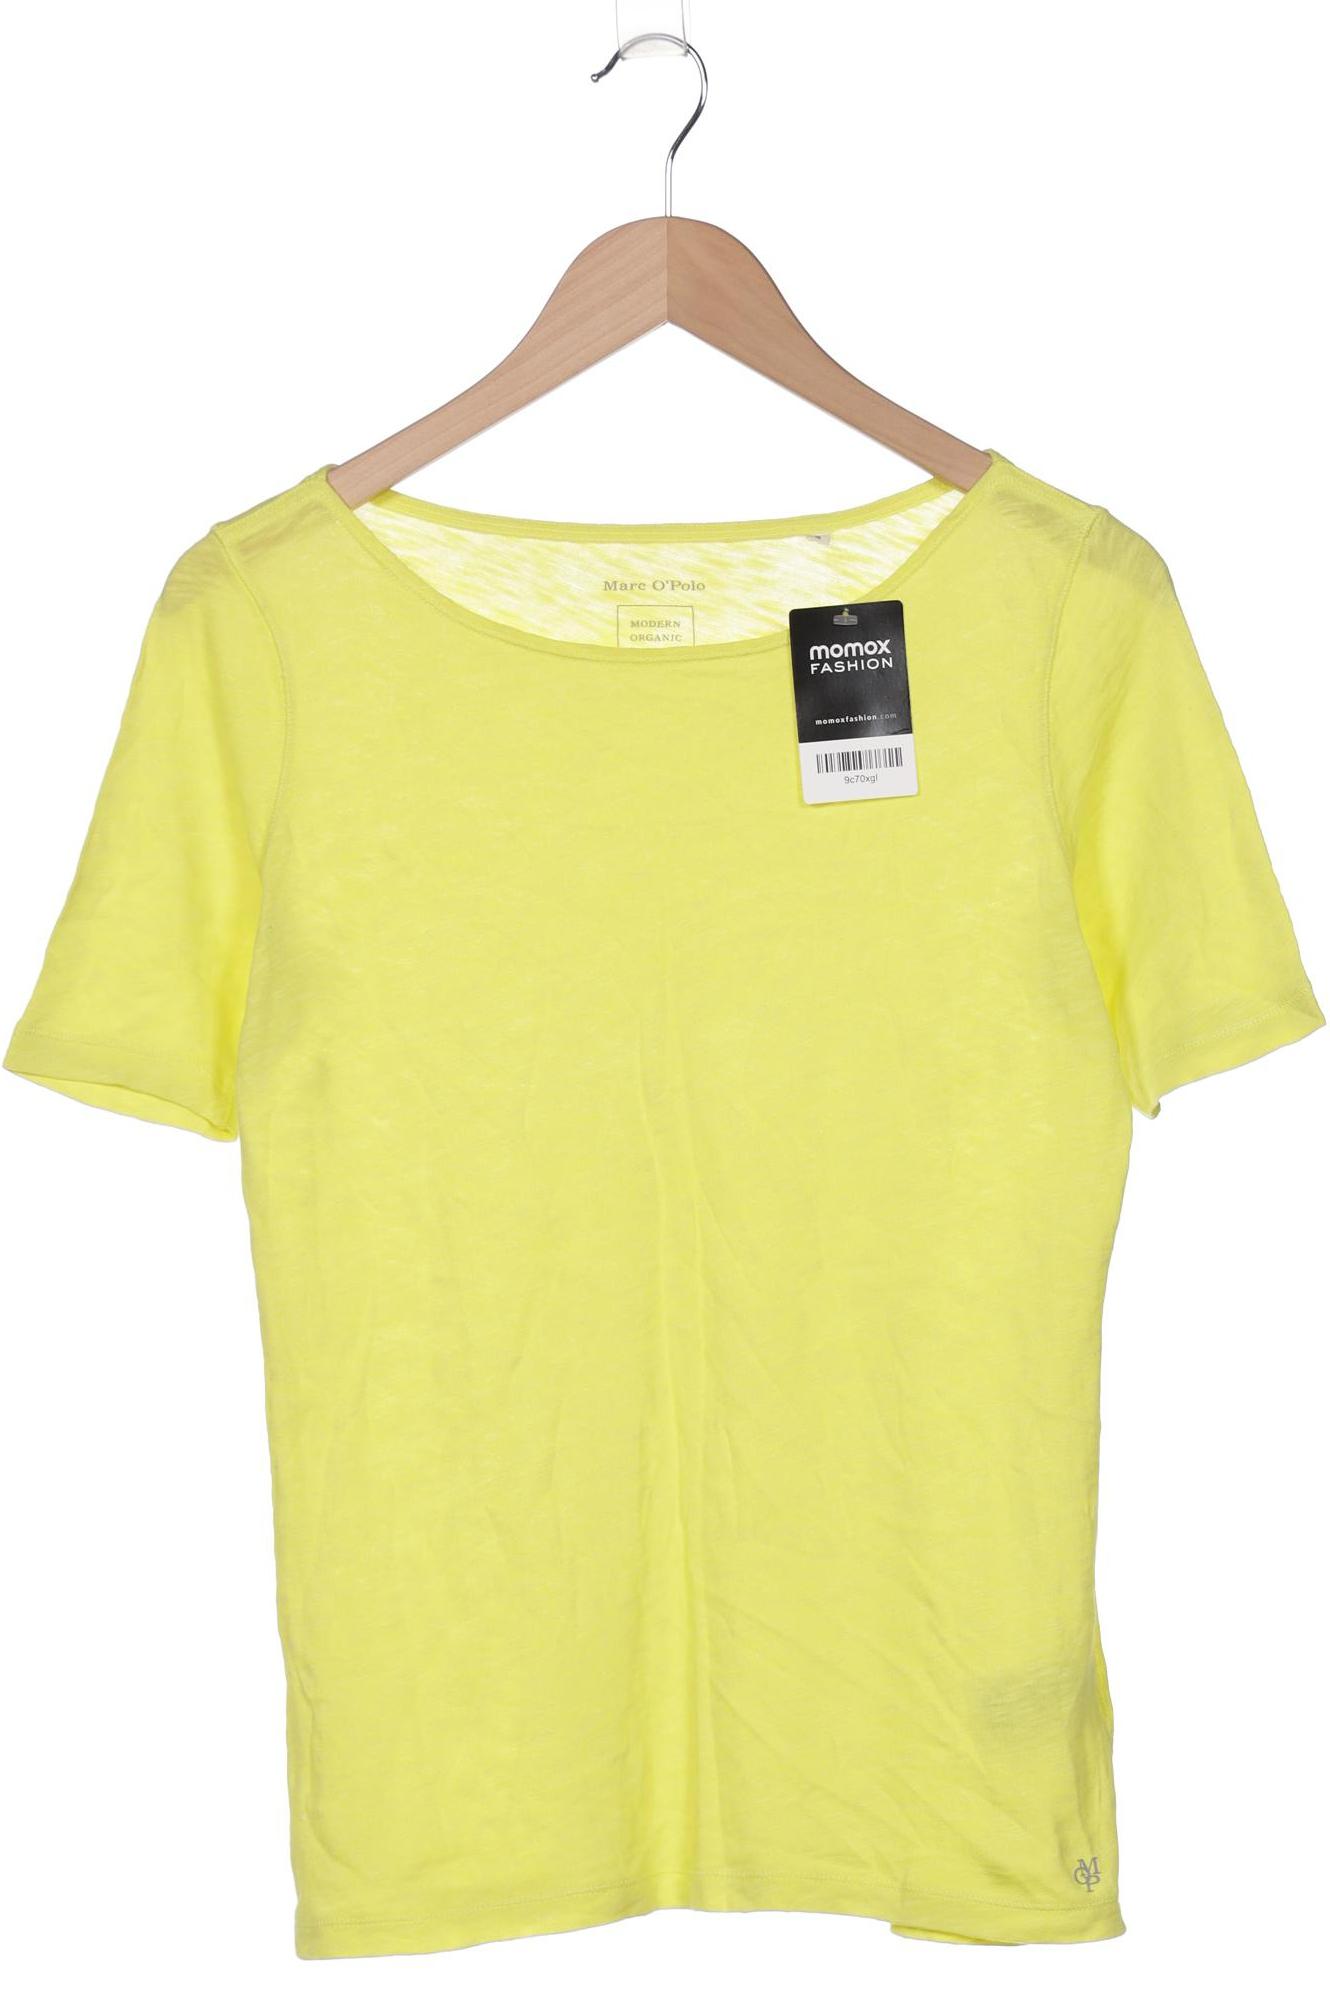 Marc O Polo Damen T-Shirt, gelb von Marc O Polo